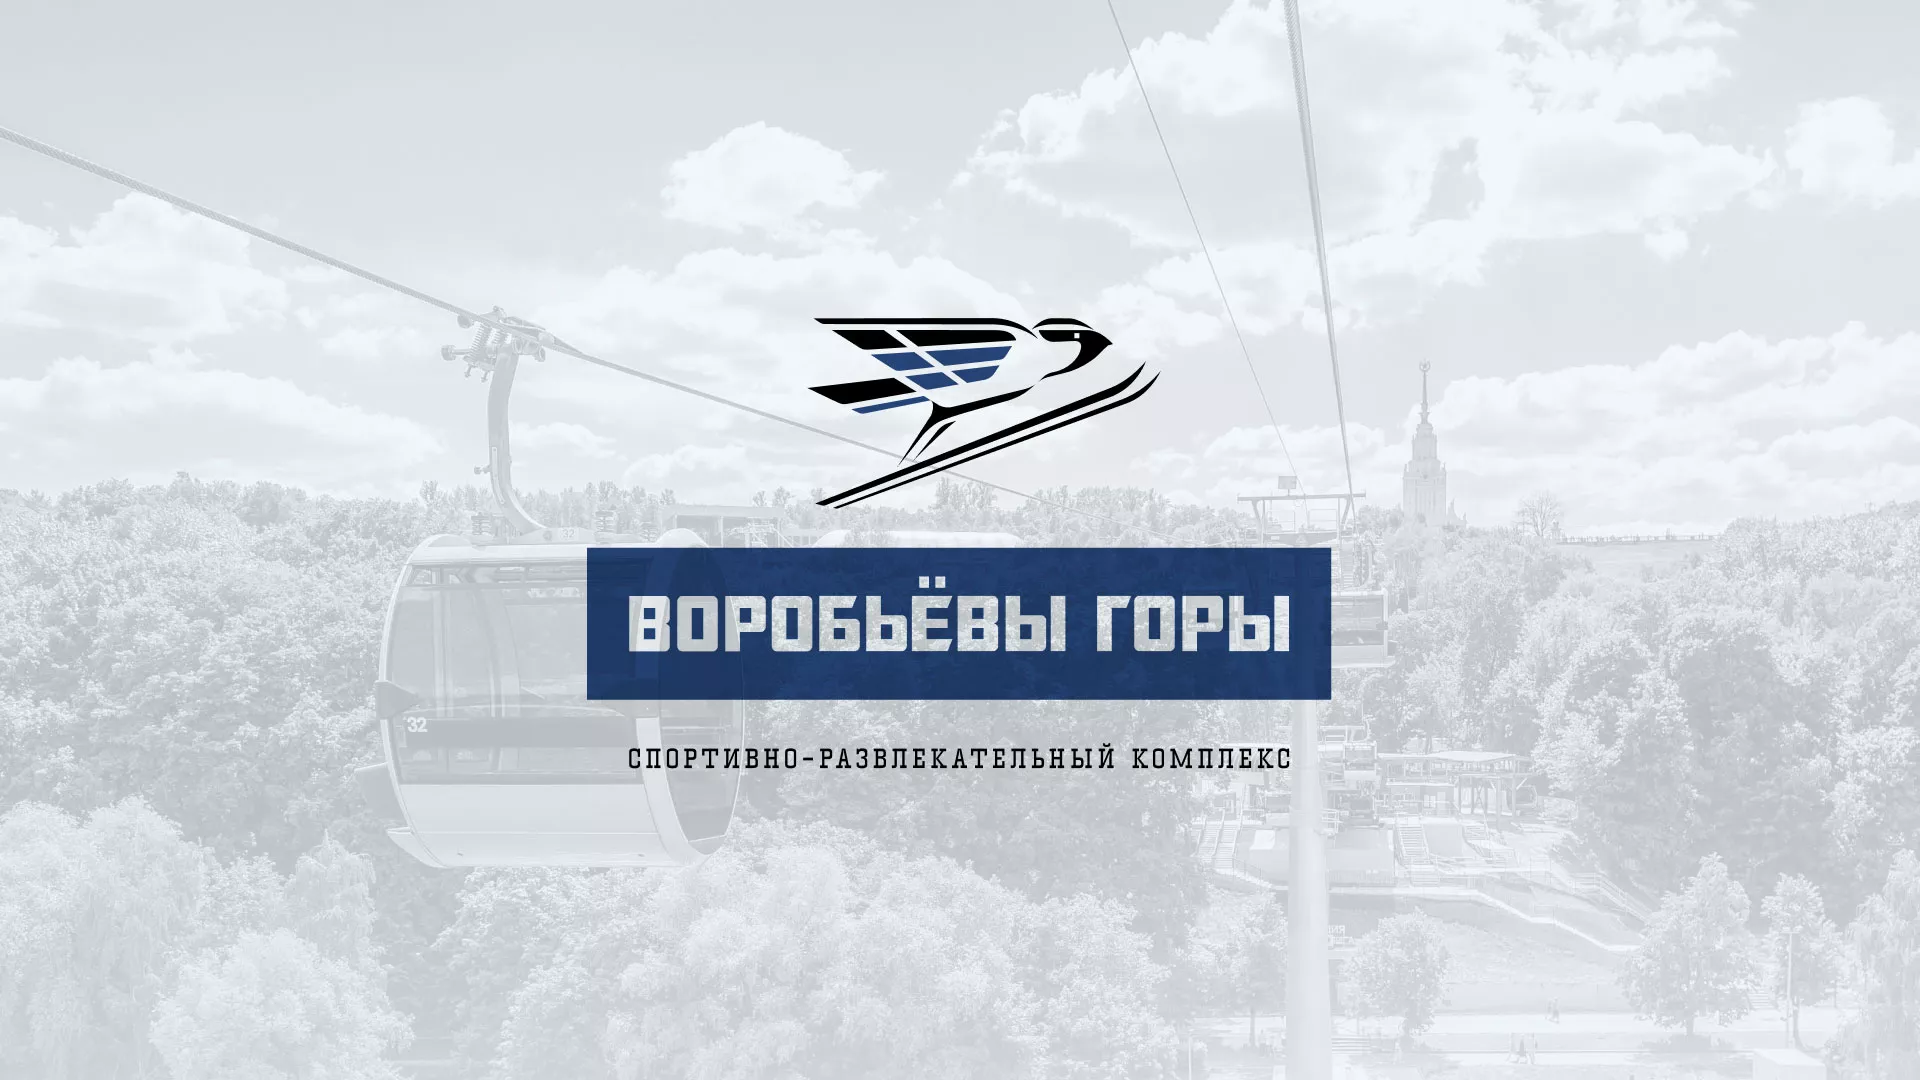 Разработка сайта в Санкт-Петербурге для спортивно-развлекательного комплекса «Воробьёвы горы»